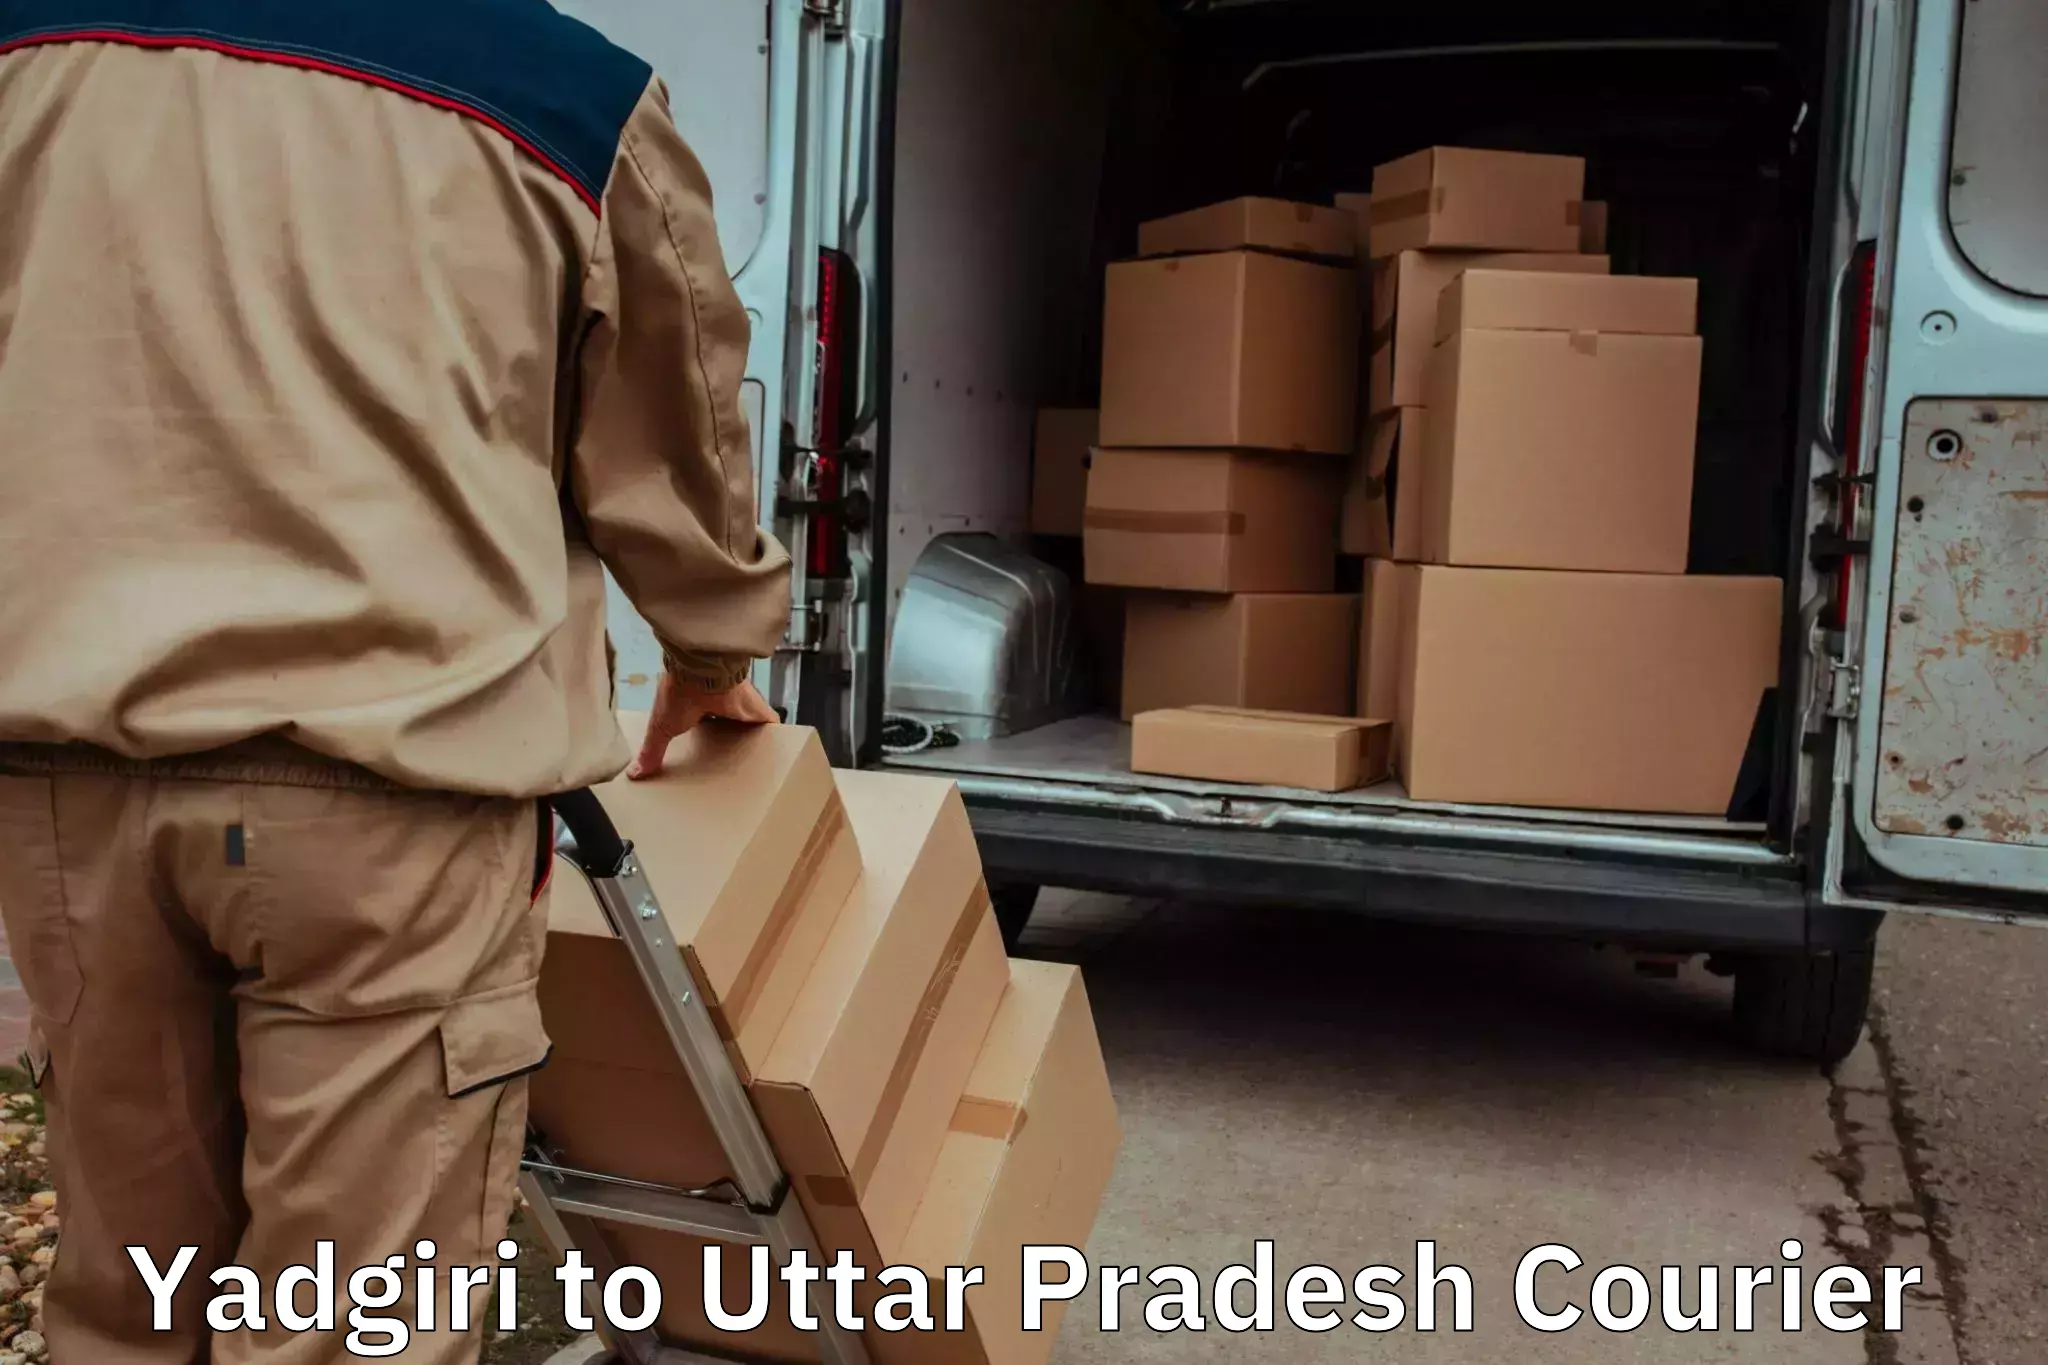 Seamless moving process Yadgiri to Thakurdwara